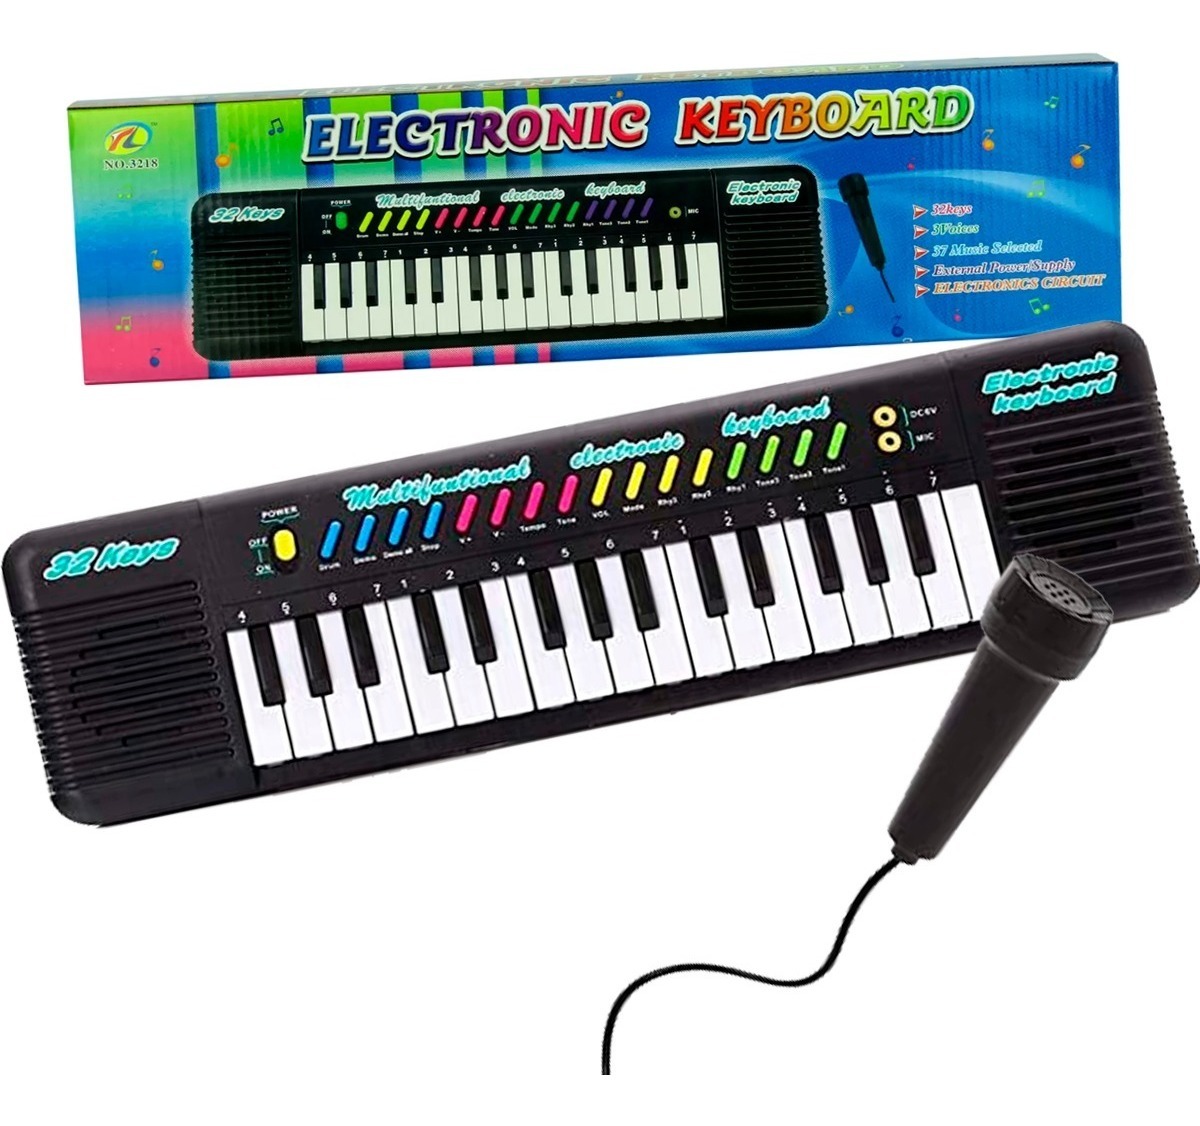 Brinquedo Teclado Infantil Com Microfone Musical 24 Musicas no